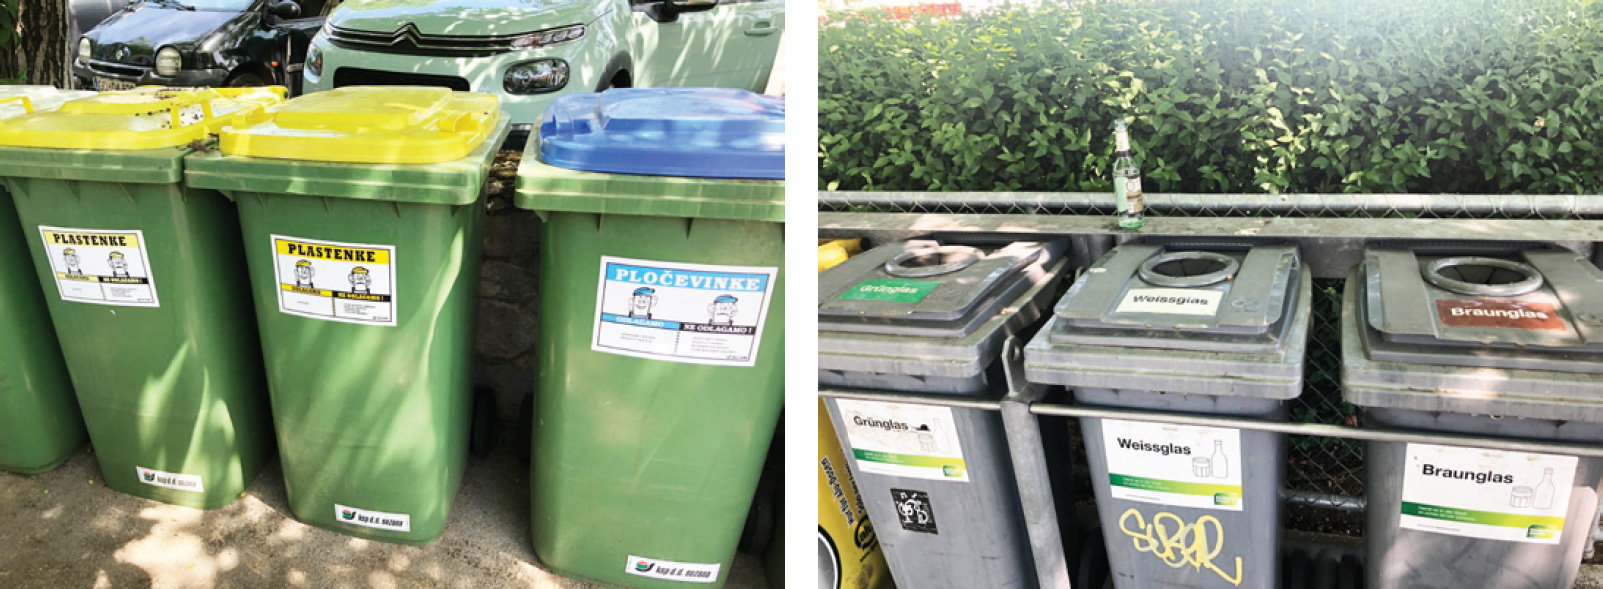 Slika 6: V občini Sežana poleg zabojnika za embalažo posebej zbirajo plastenke in pločevinke (levo), kar močno poveča delež reciklabilnosti odpadkov. V švicarskem Zürichu iz enakega razloga posebej zbirajo tudi stekleno embalažo zelene, bele in rjave barve (desno). Avtor fotografij: Kumer, 2022